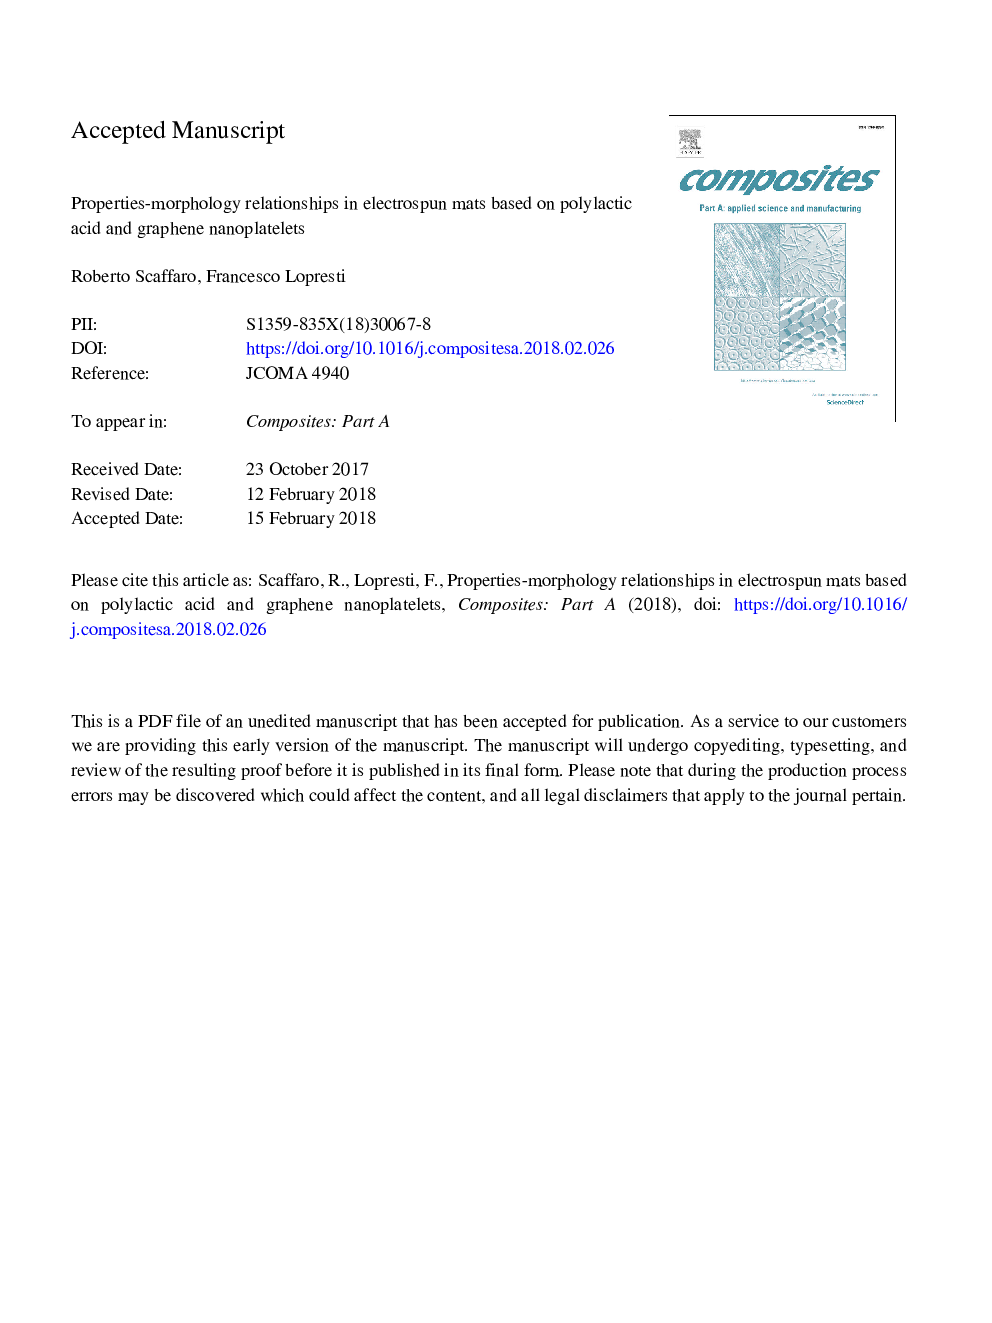 خواص-مورفولوژی روابط در تشک های الکترواسپون بر اساس اسید های پلی اتیلن و نانولوله های گرافن 